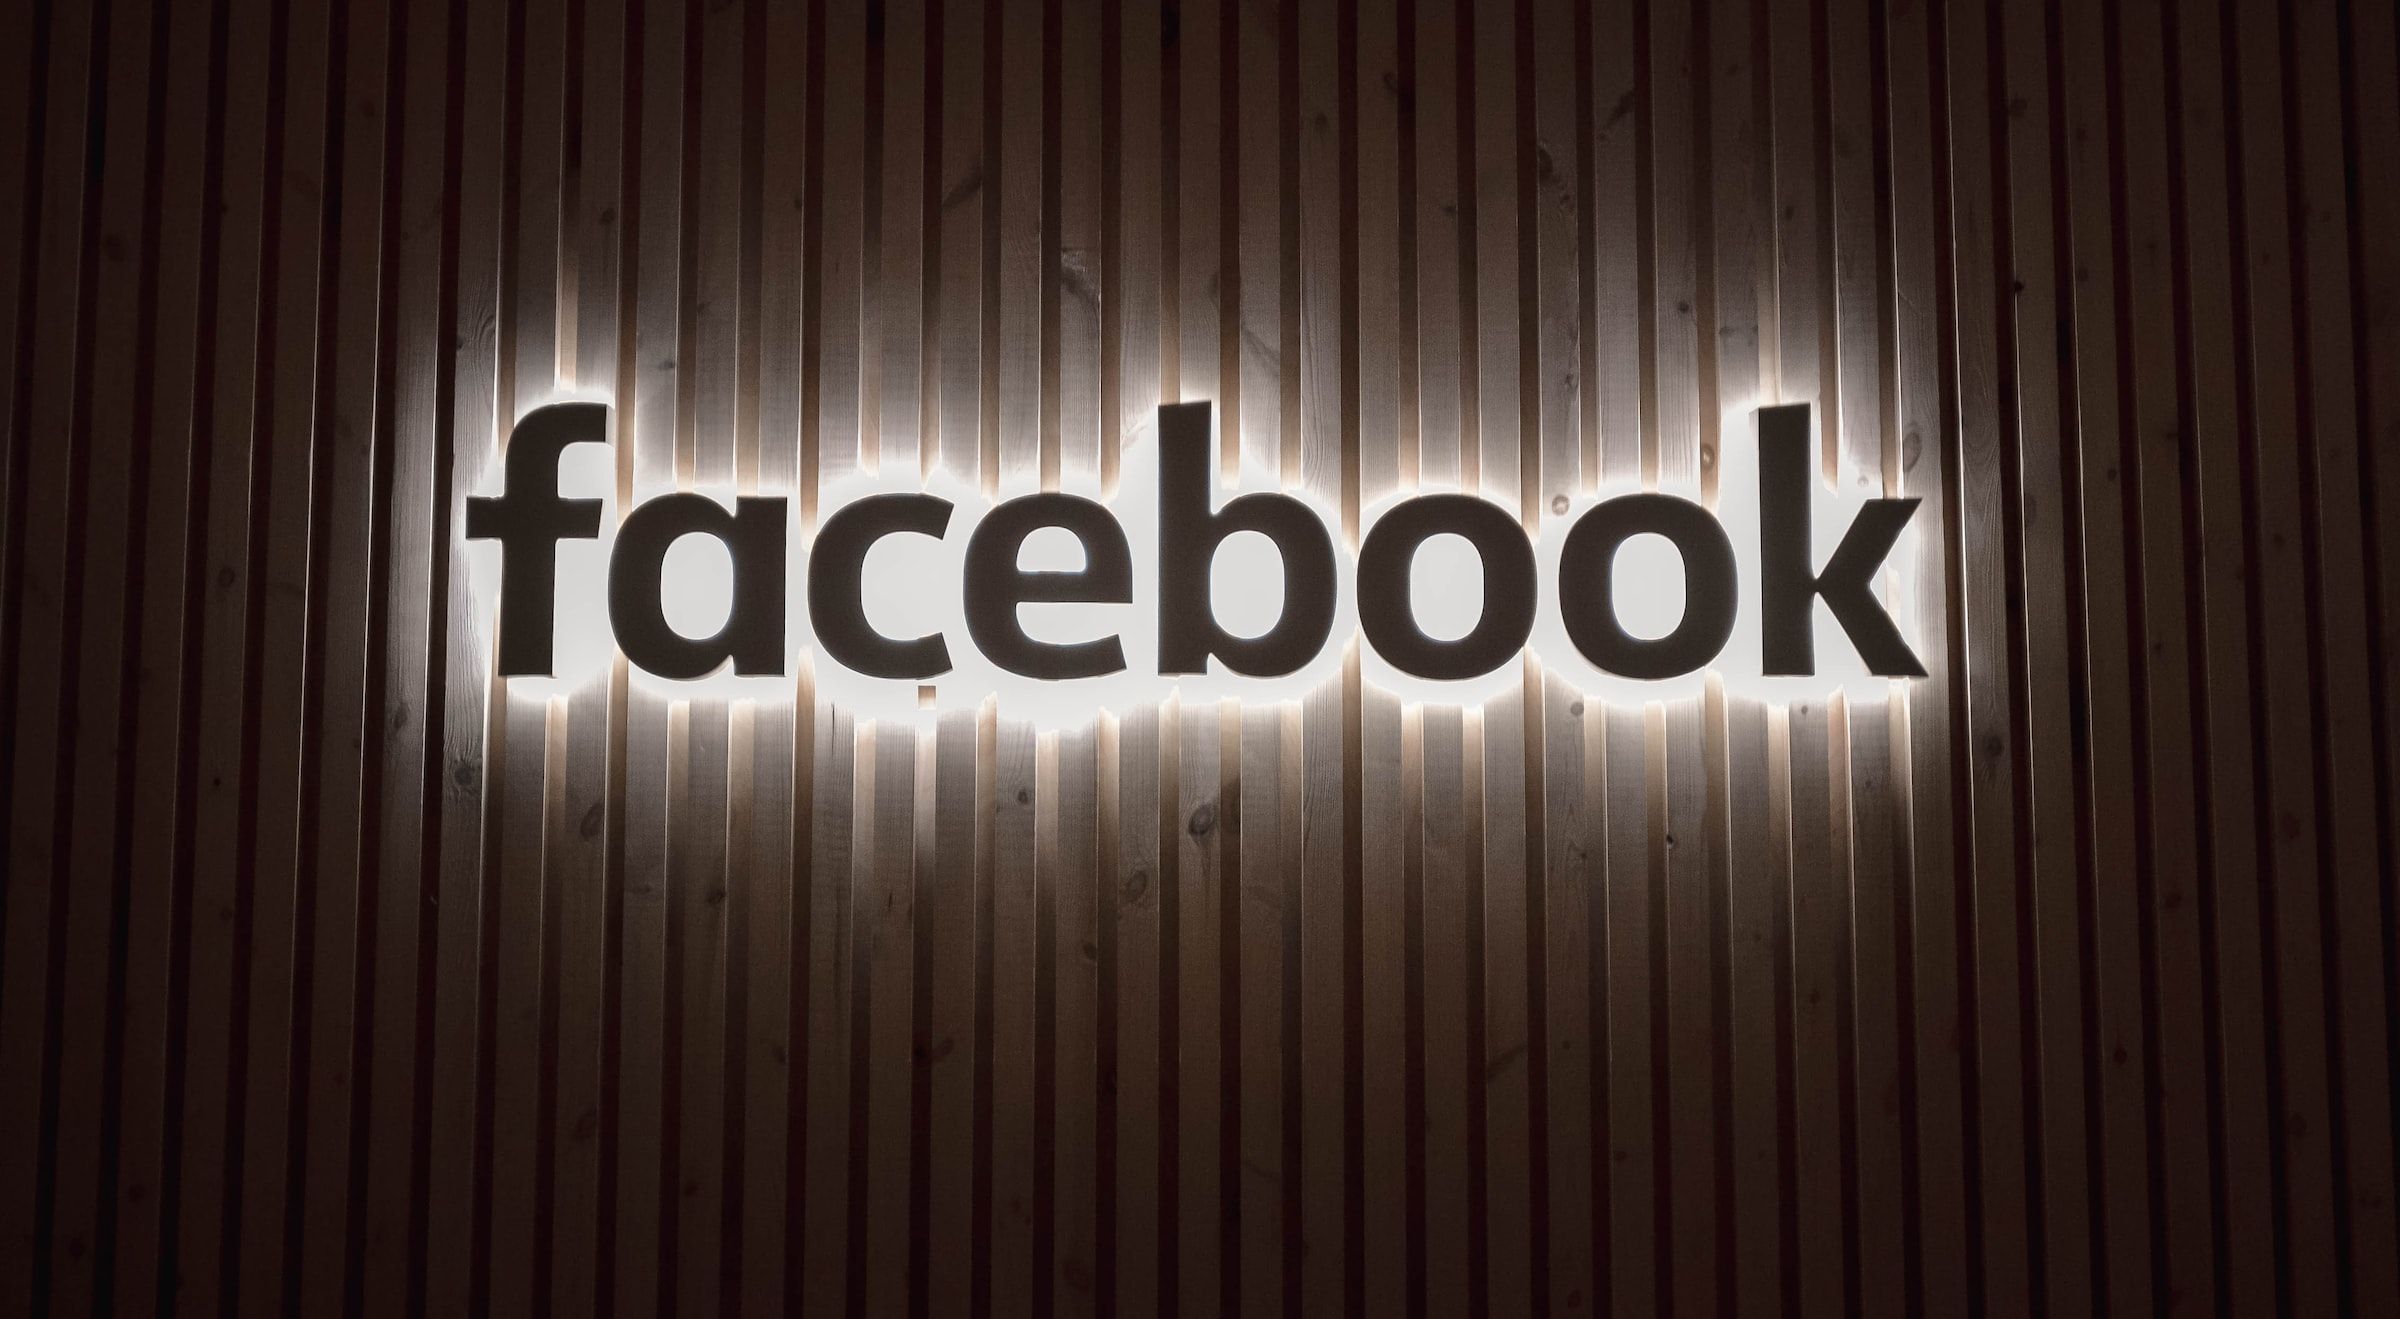 Logotipo do Facebook contra uma cerca de madeira